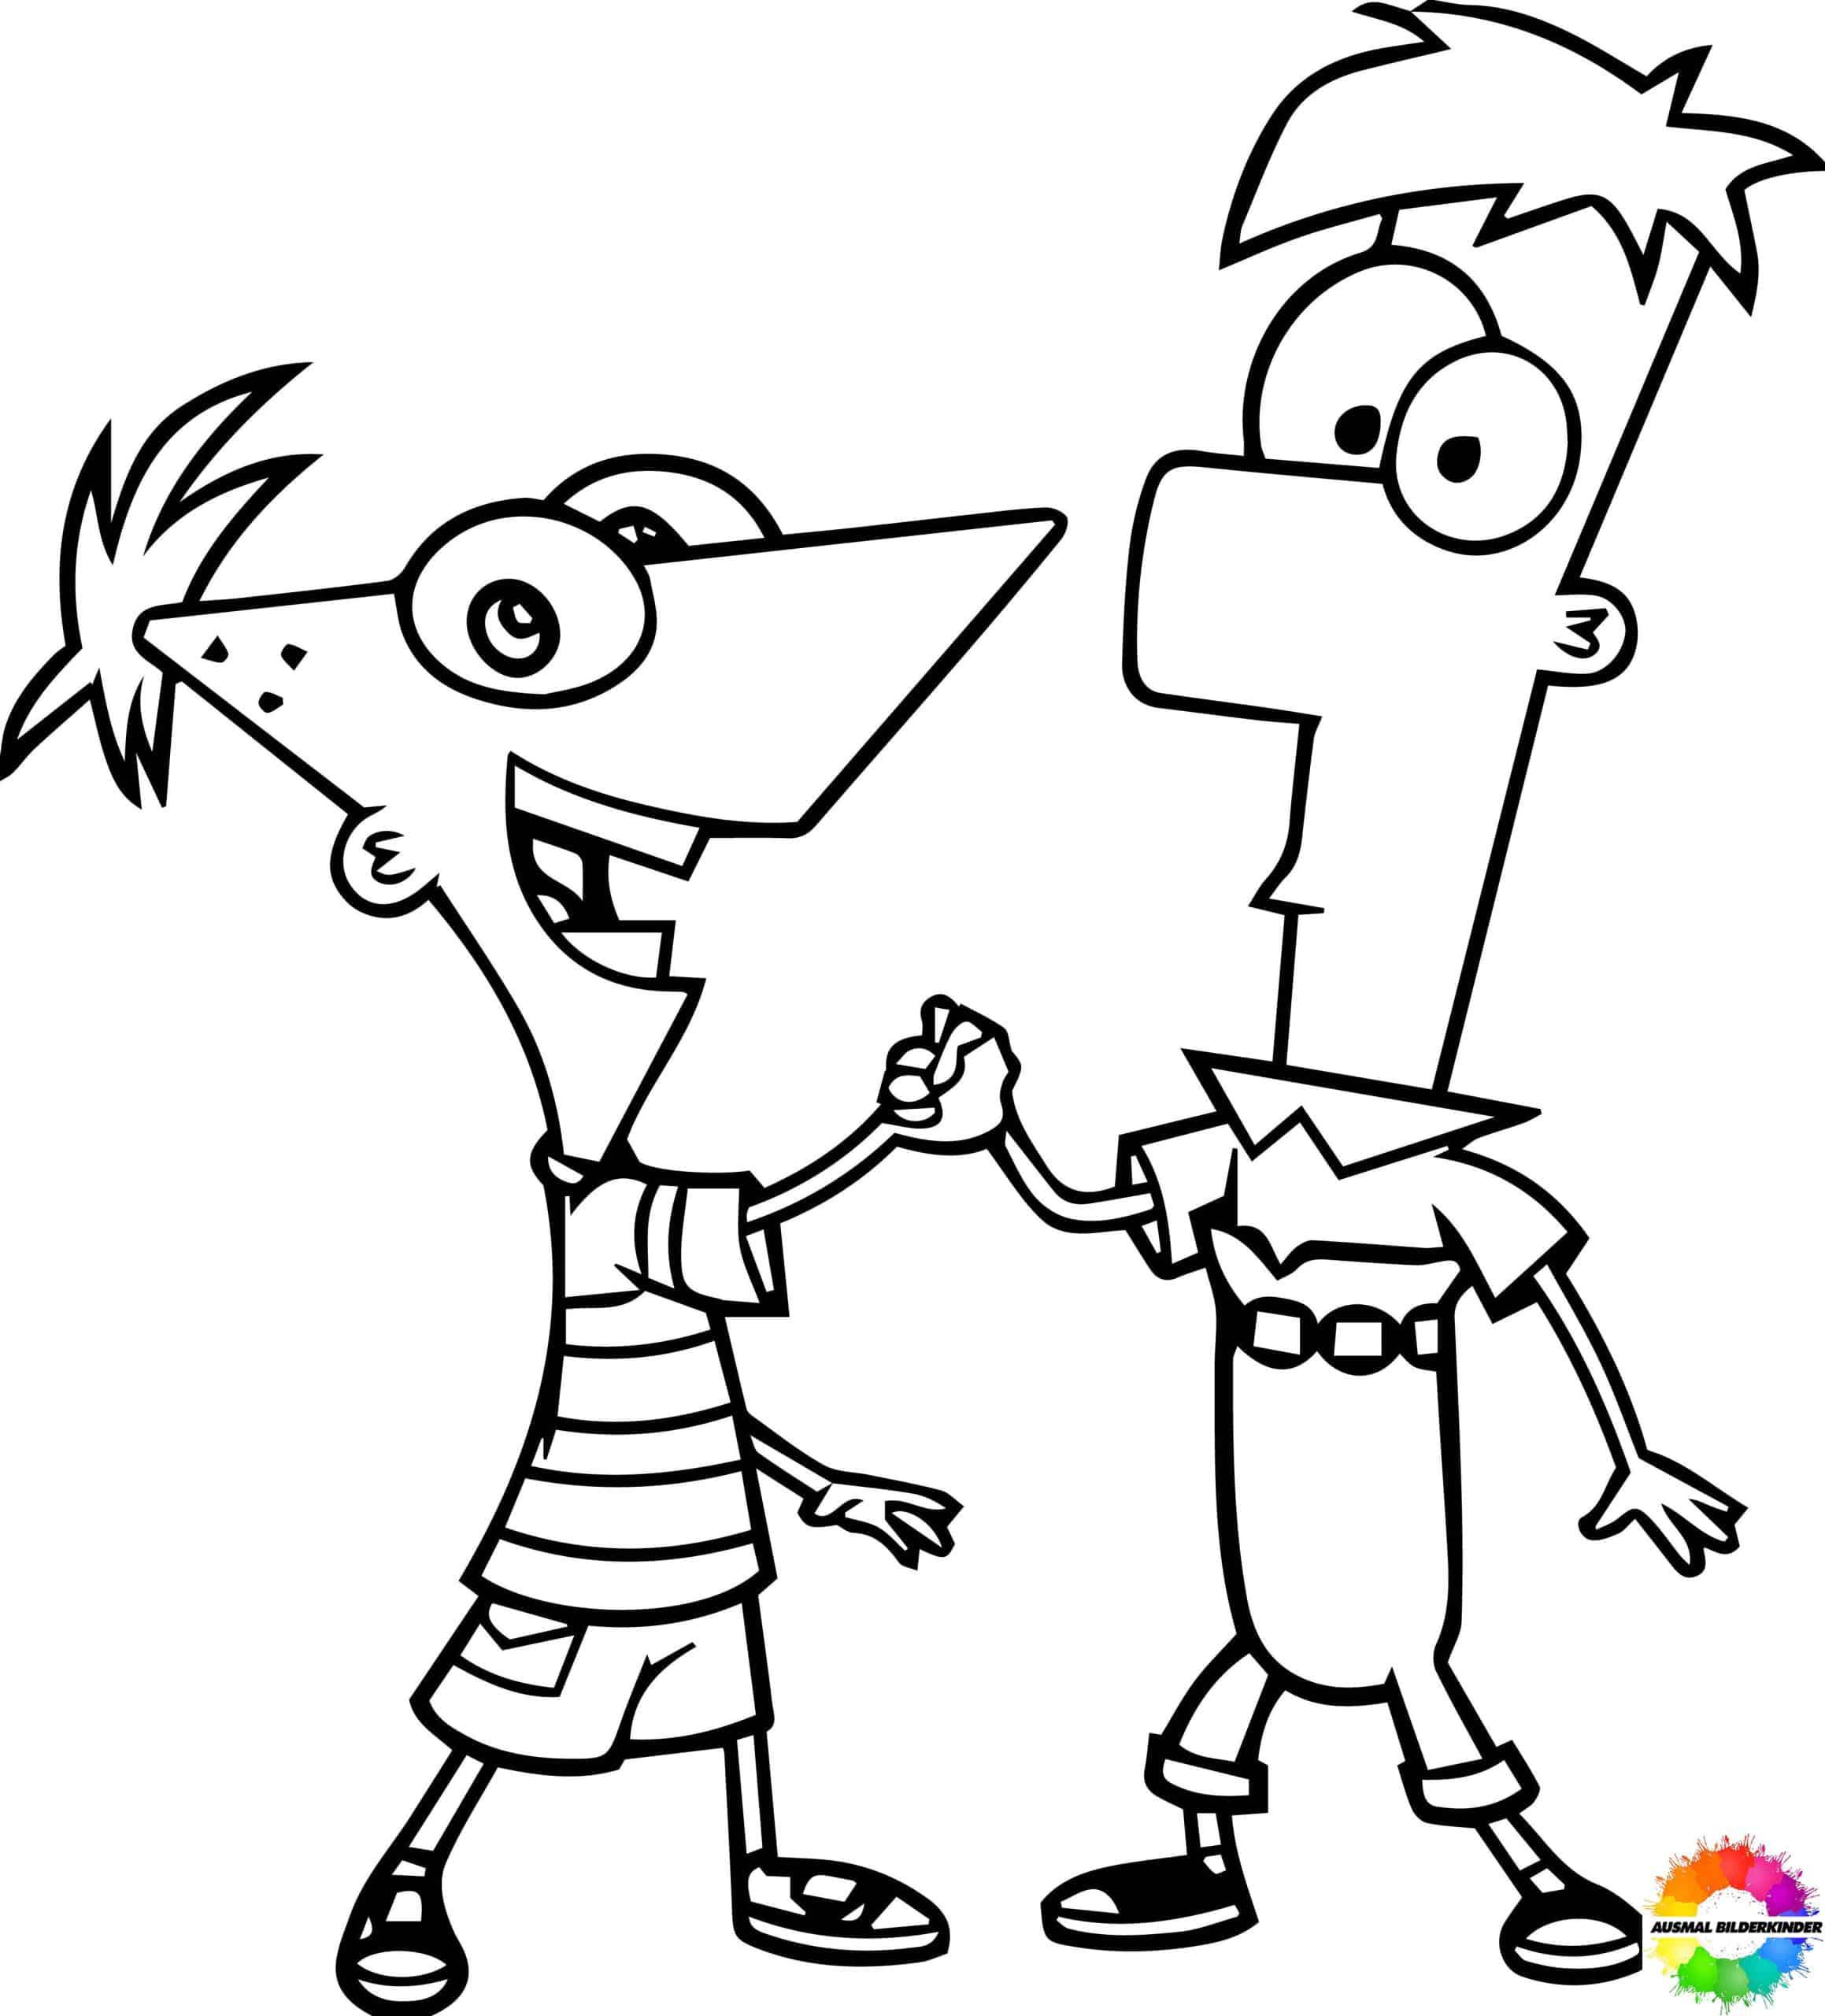 Phineas und Ferb 24